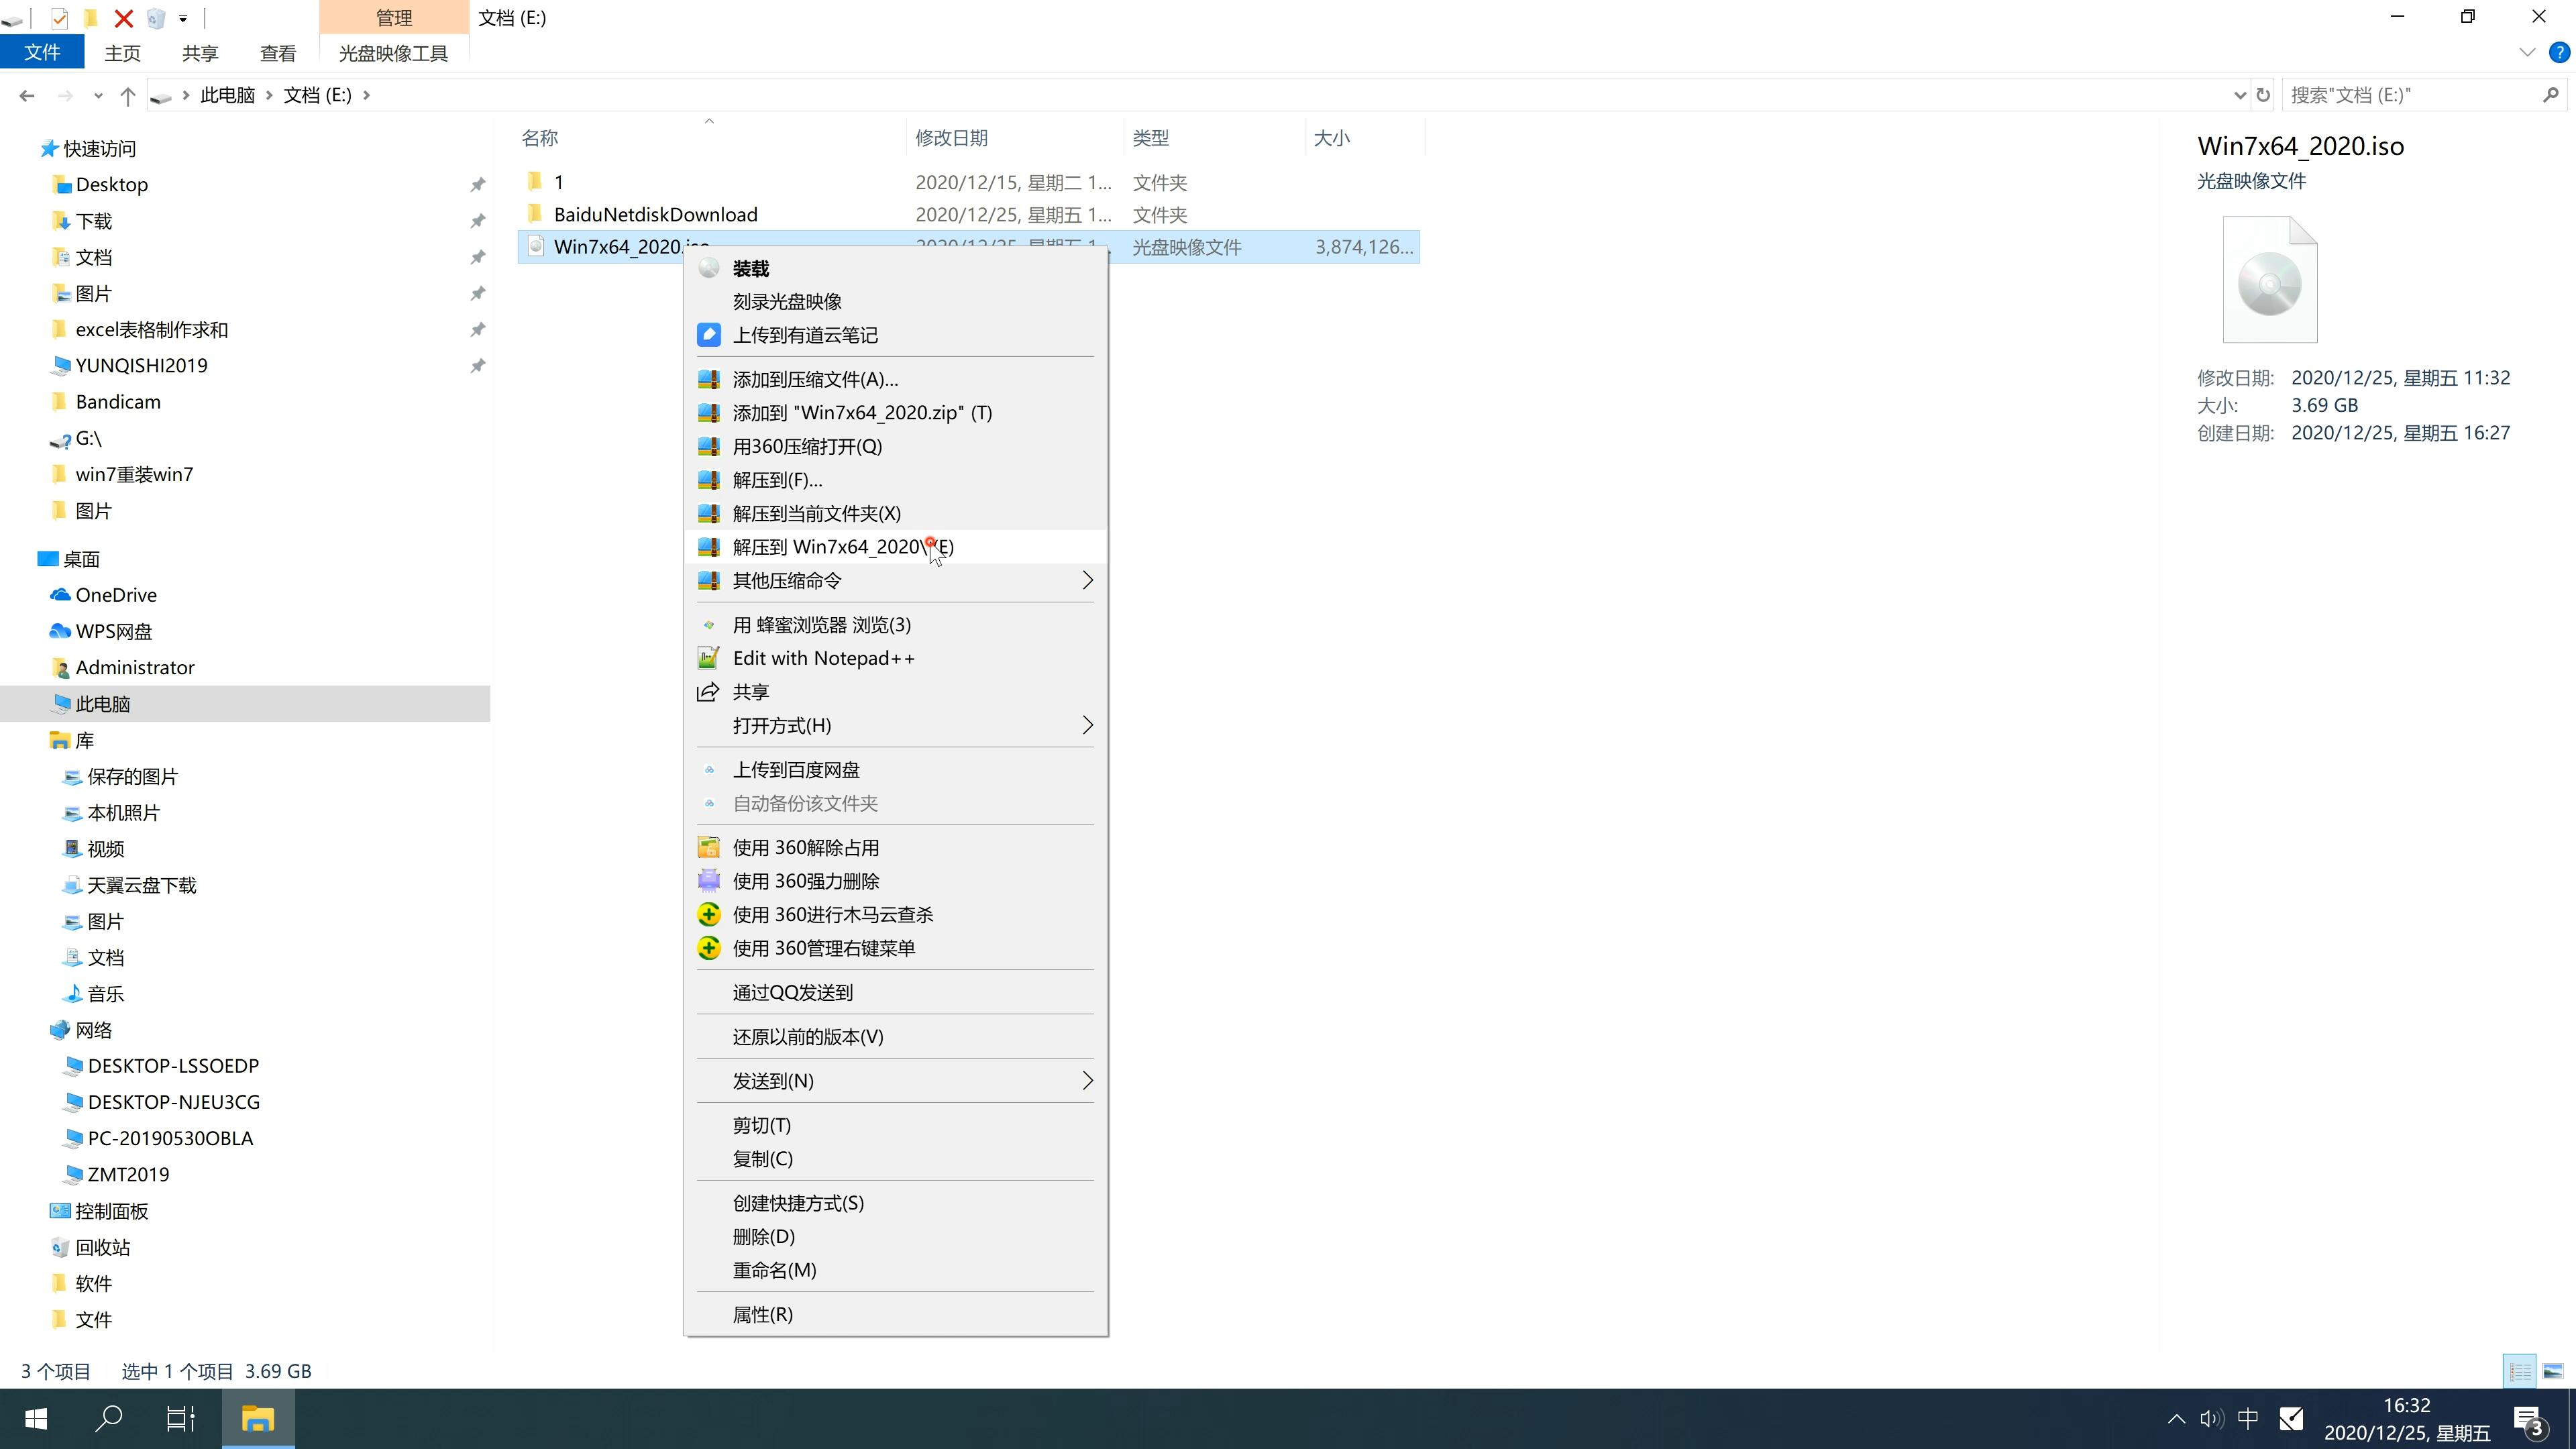 三星笔记本专用系统  Window7 64  稳定旗舰版 V2021.04